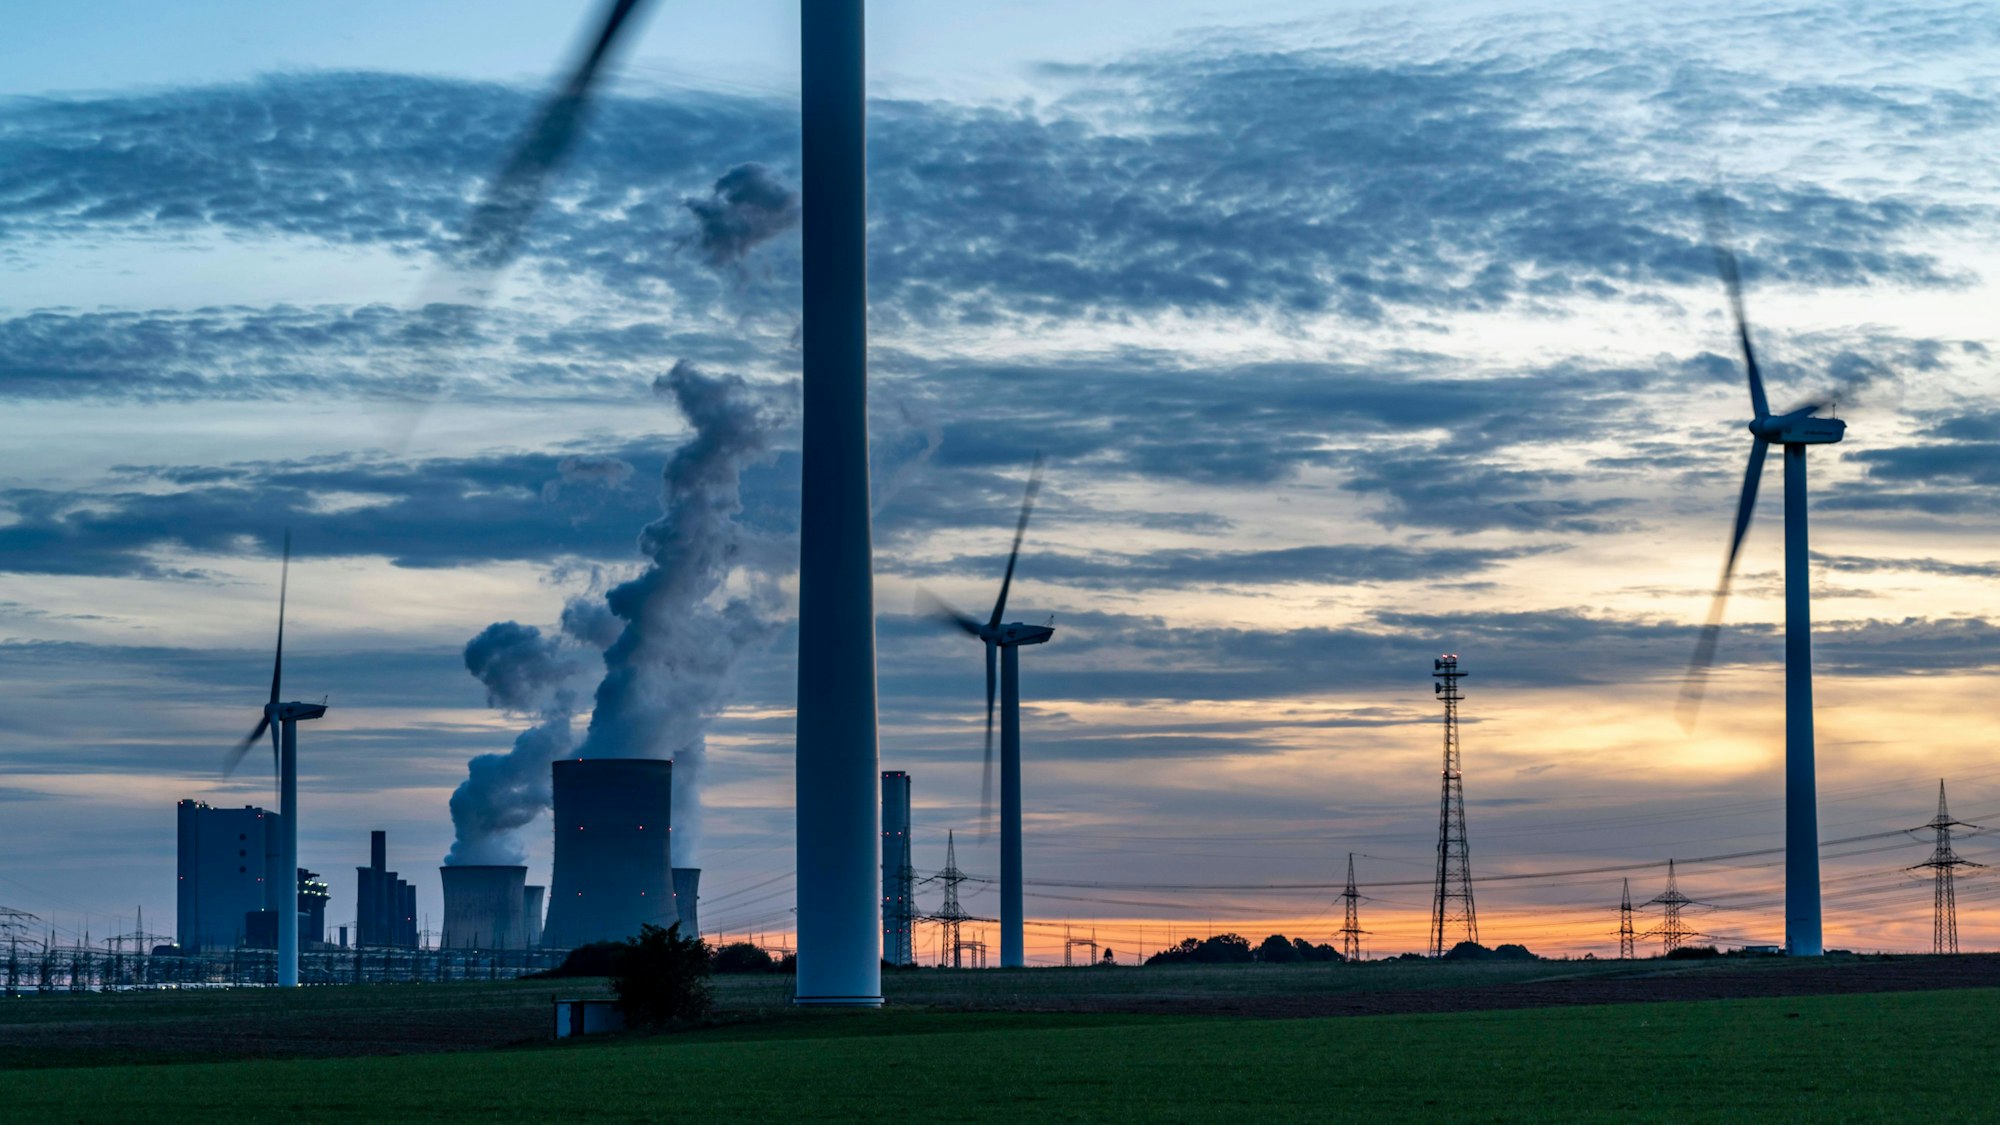 Braunkohle Kraftwerk, RWE Power AG Kraftwerk Niederaußem, Windkraftwerke, Zwei Blöcke wurden 2020/21 stillgelegt und im Juni 2022 wieder hochgefahren, um Gaskraftwerke in der Energiekrise 2022 zu ersetzen,